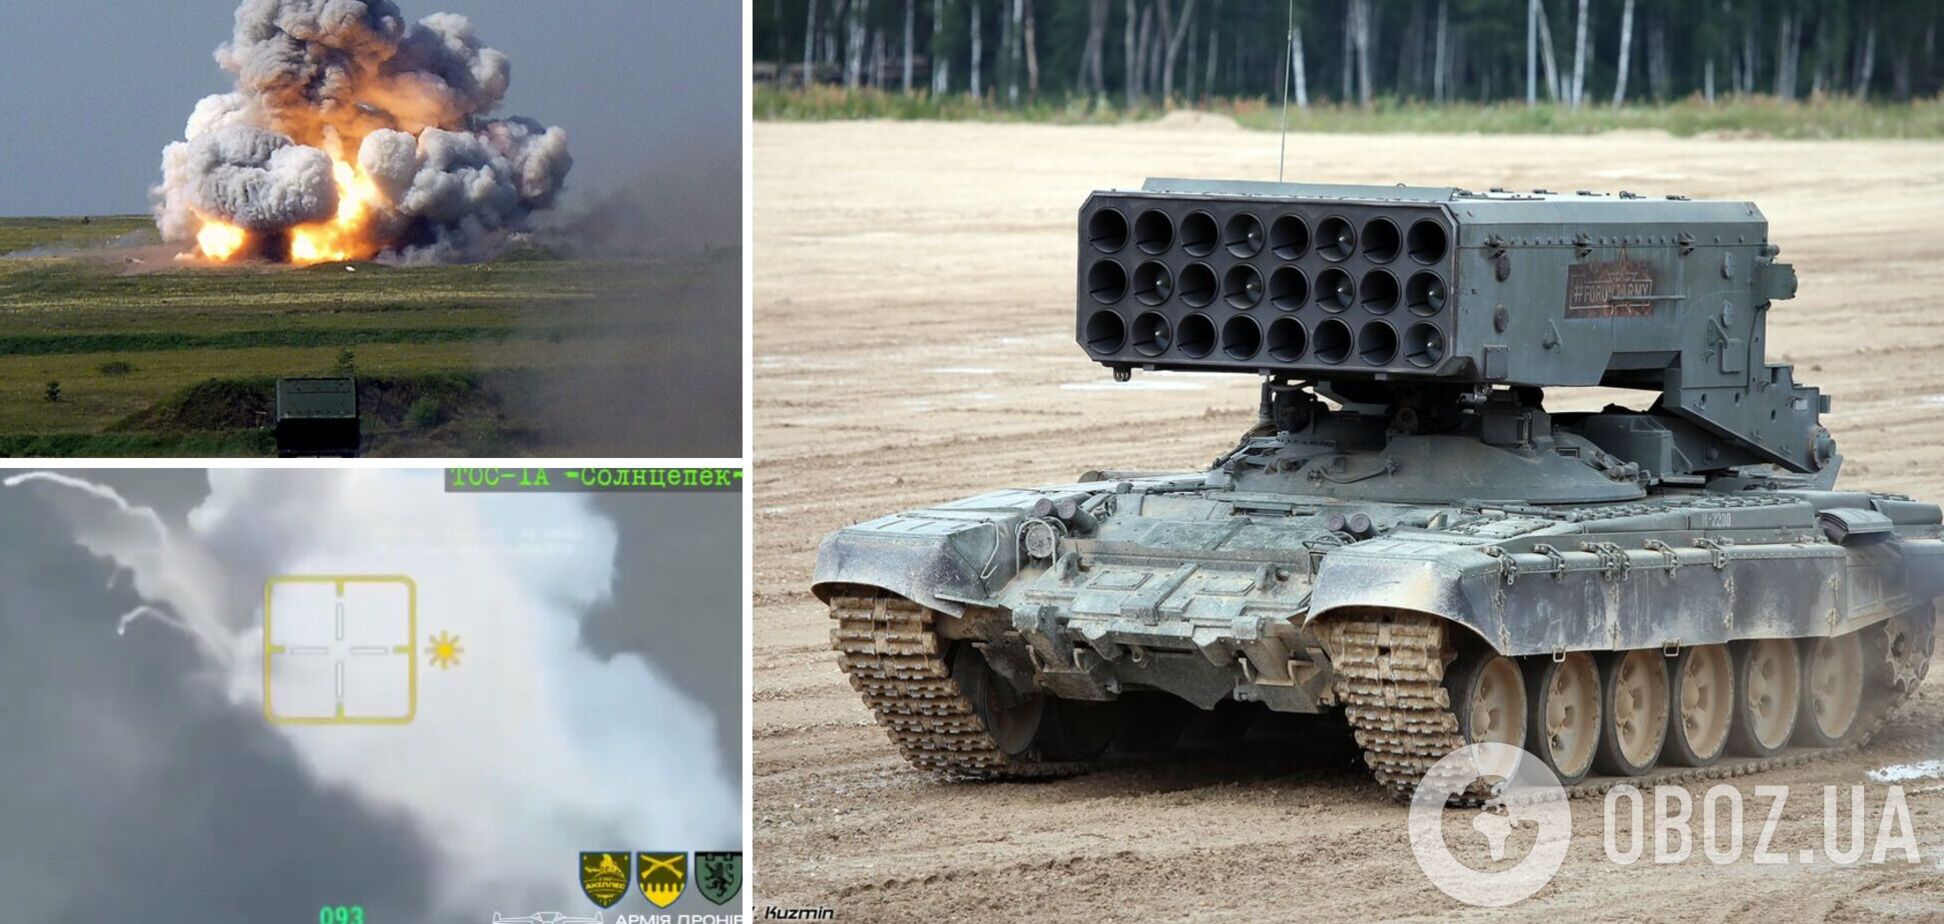 В Луганской области украинские воины уничтожили российский 'Солнцепек' вместе с экипажем. Видео